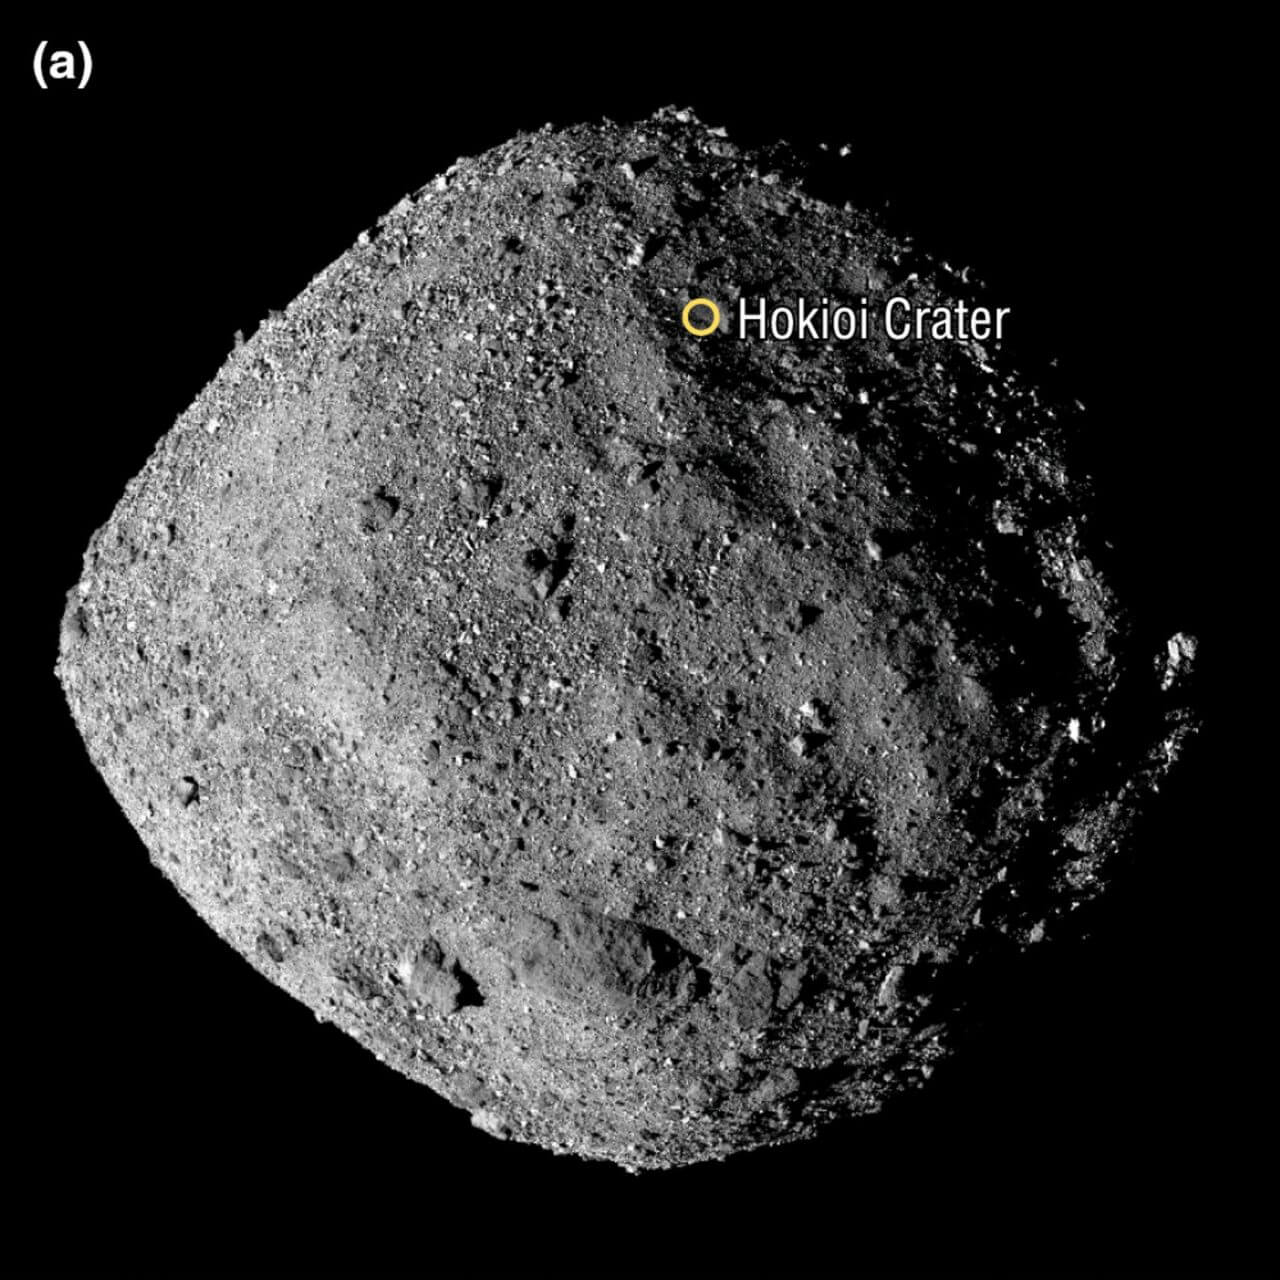 【▲ 図1: OSIRIS-RExによって撮影された小惑星ベンヌの外観。今回分析されたサンプルは、中緯度地域にあるホキオイ・クレーター内のナイチンゲール地点から採集されました。（Credit: NASA, Goddard & University of Arizona）】